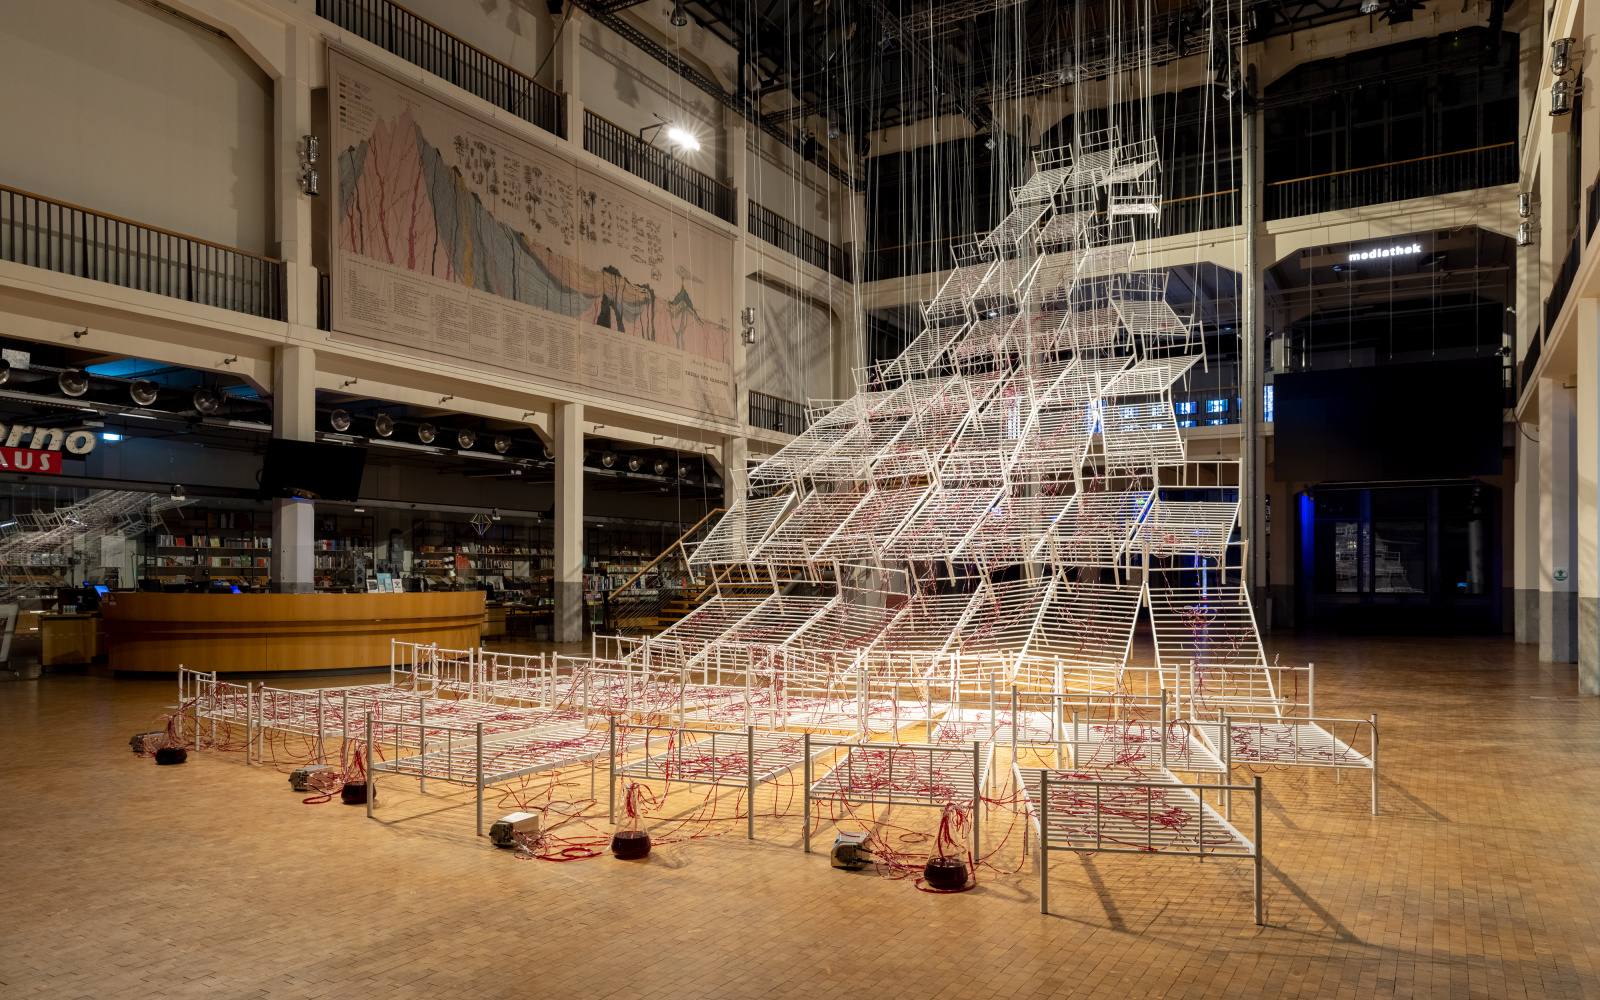 Installationsansicht von Chiharu Shiotas »Connected to Life«. Zu sehen sind mehrere Krankenhausbettgestelle, die von der Decke hängen. Durch transparente Schläuche an den Betten fließt rote Flüssigkeit.